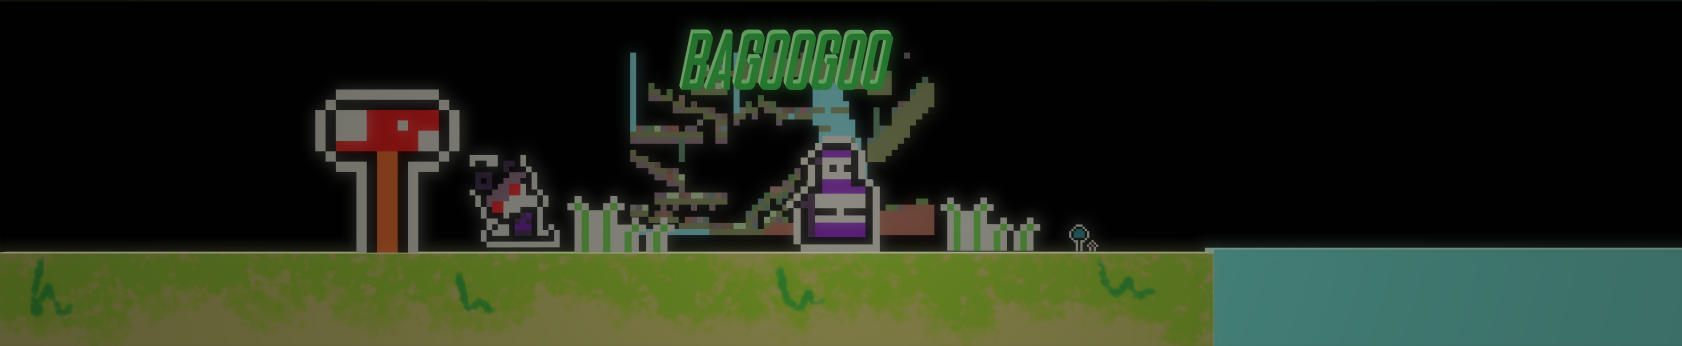 BaGooGoo Beta